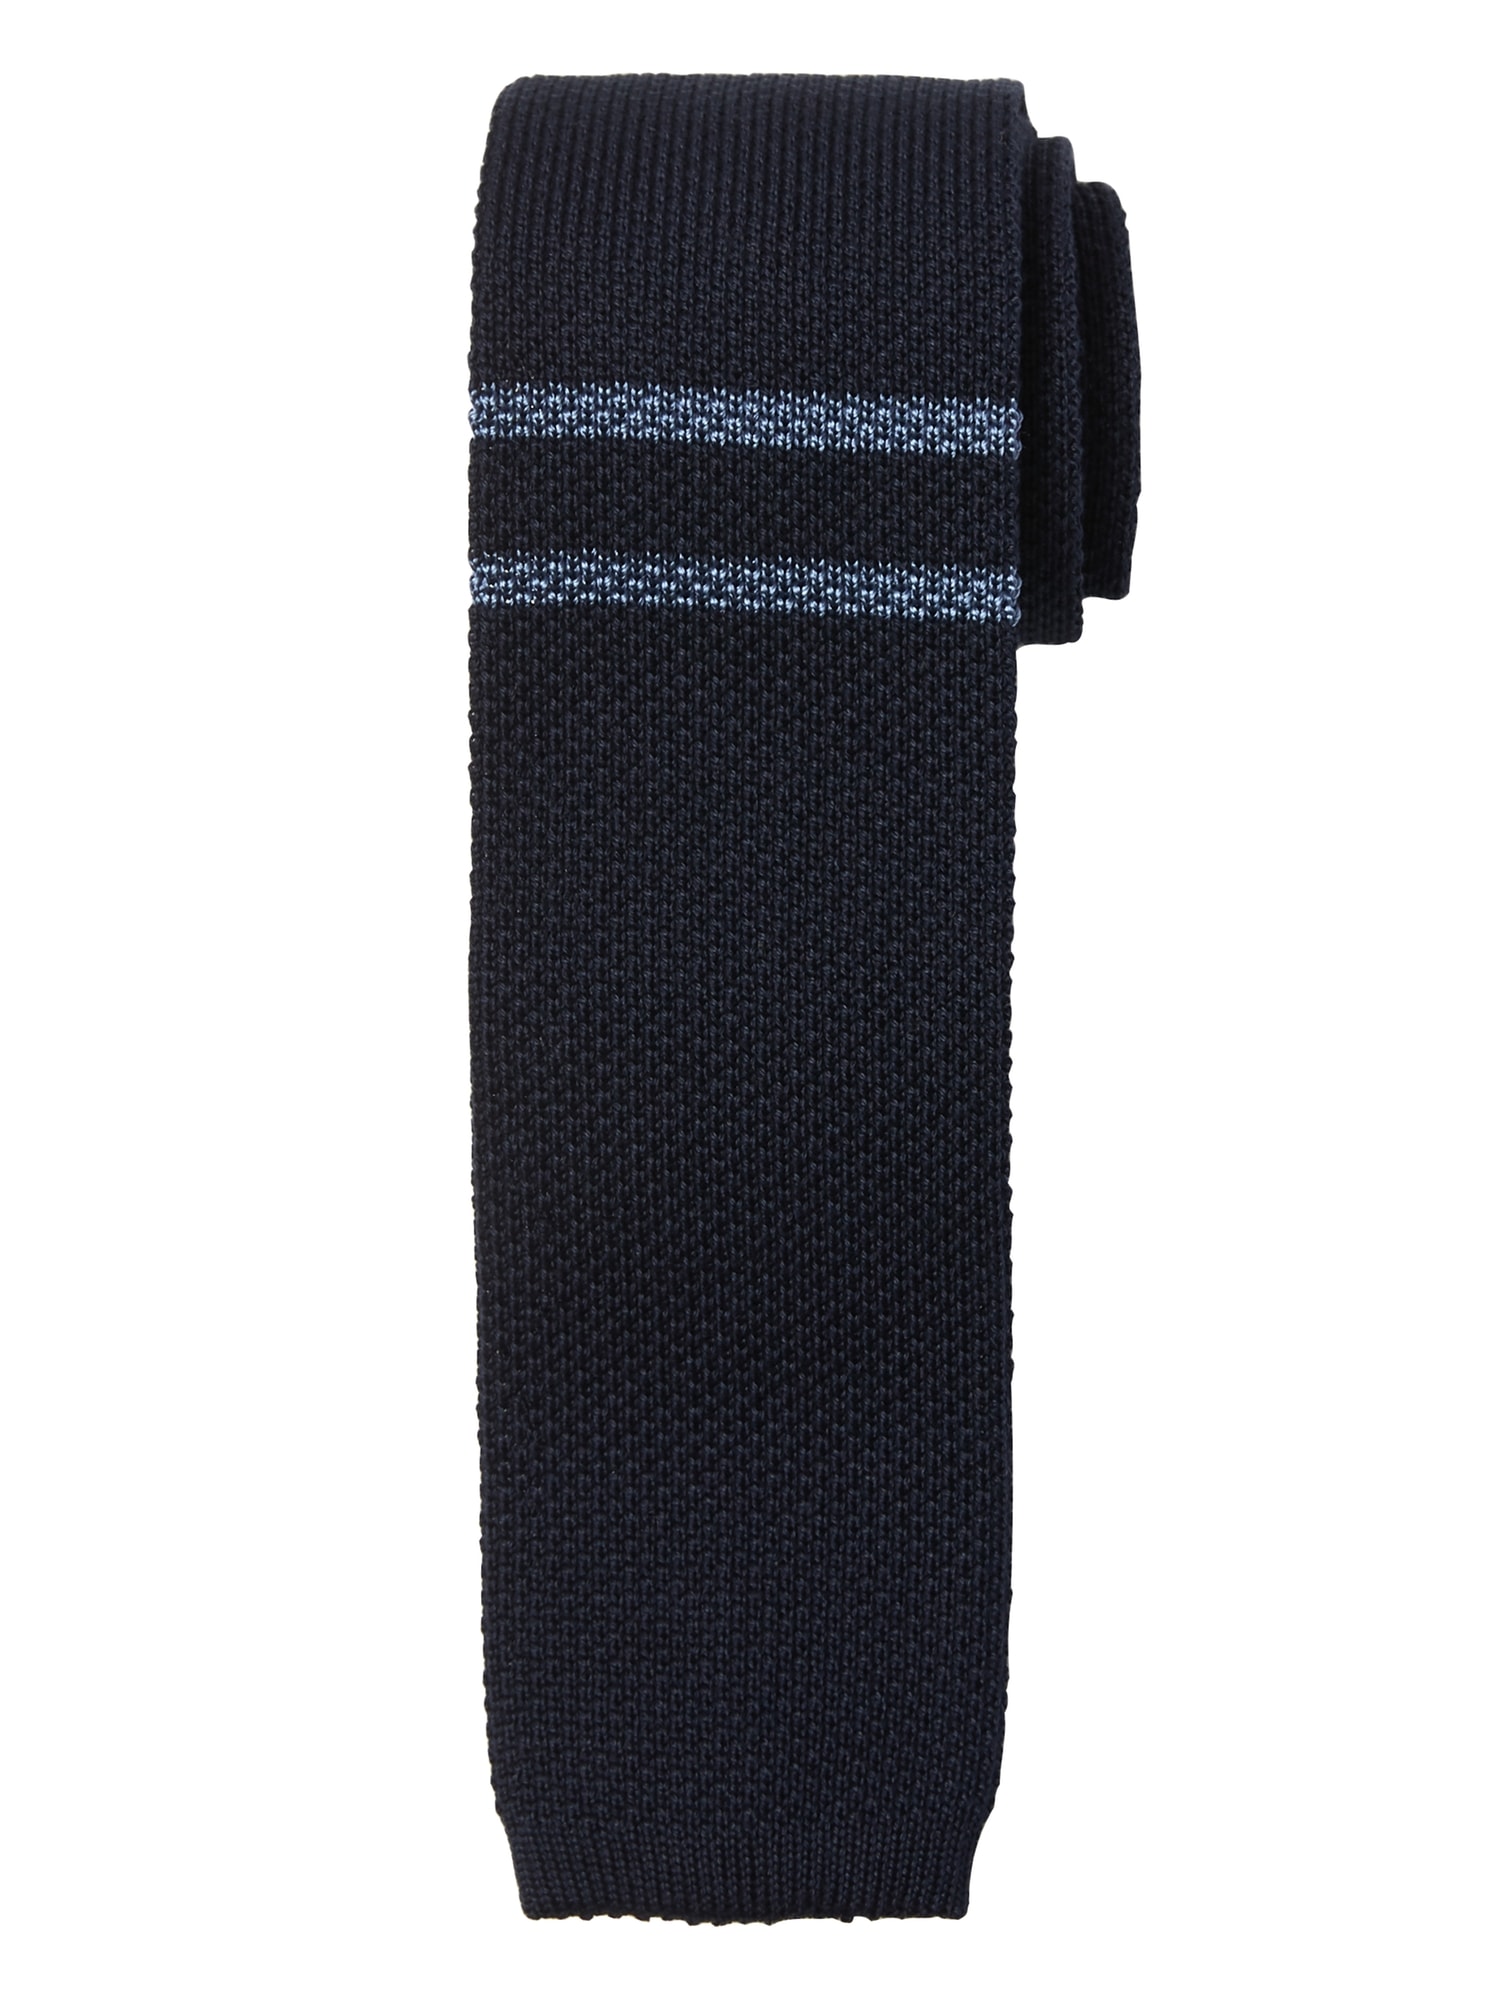 Stripe Knit Tie